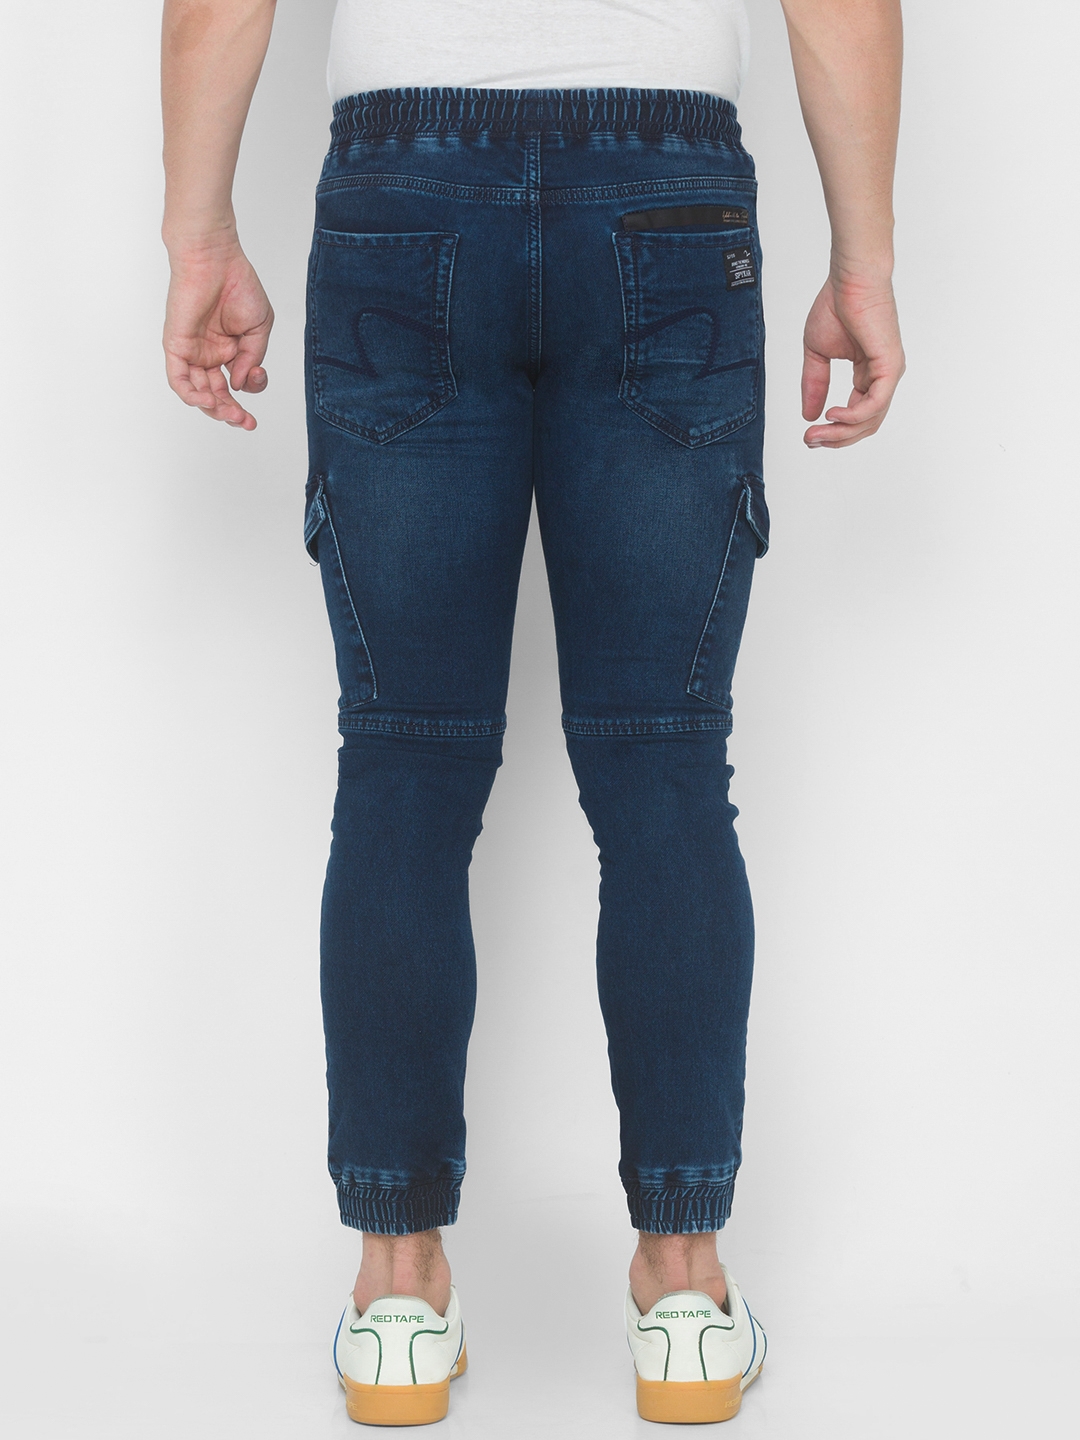 Spykar | Men's Blue Cotton Solid Joggers Jeans 3